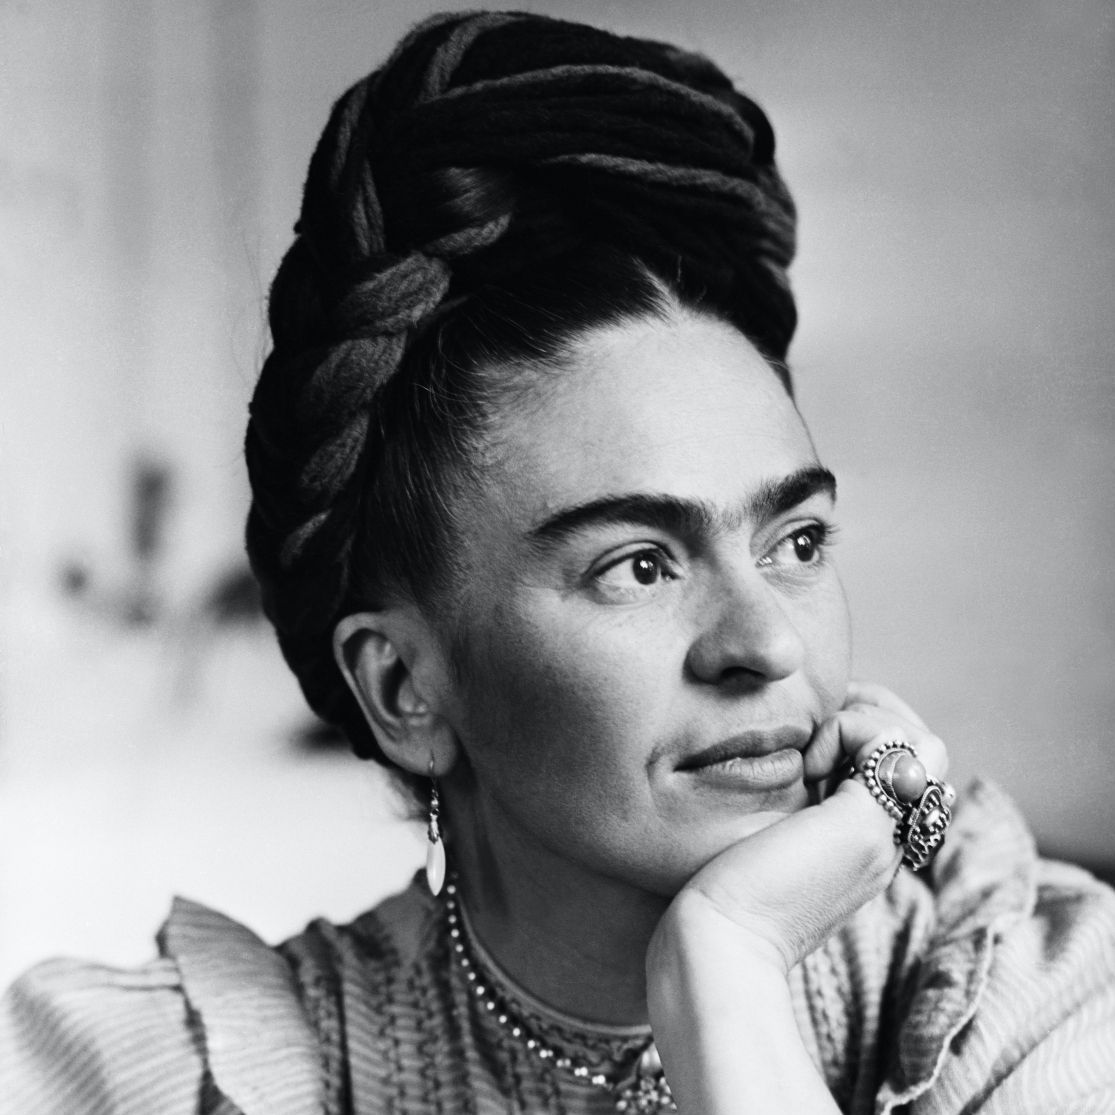 Pour les peintres, ont été citées une fois chacuneMarie Laurencin, qui était aussi poétesse, illustratrice, écrivaine...Rosa Bonheur, qui n'est pas seulement un super bar aux Buttes-Chaumont Frida Kahlo, dont je vous invite aussi à découvrir les lettres merveilleuses!